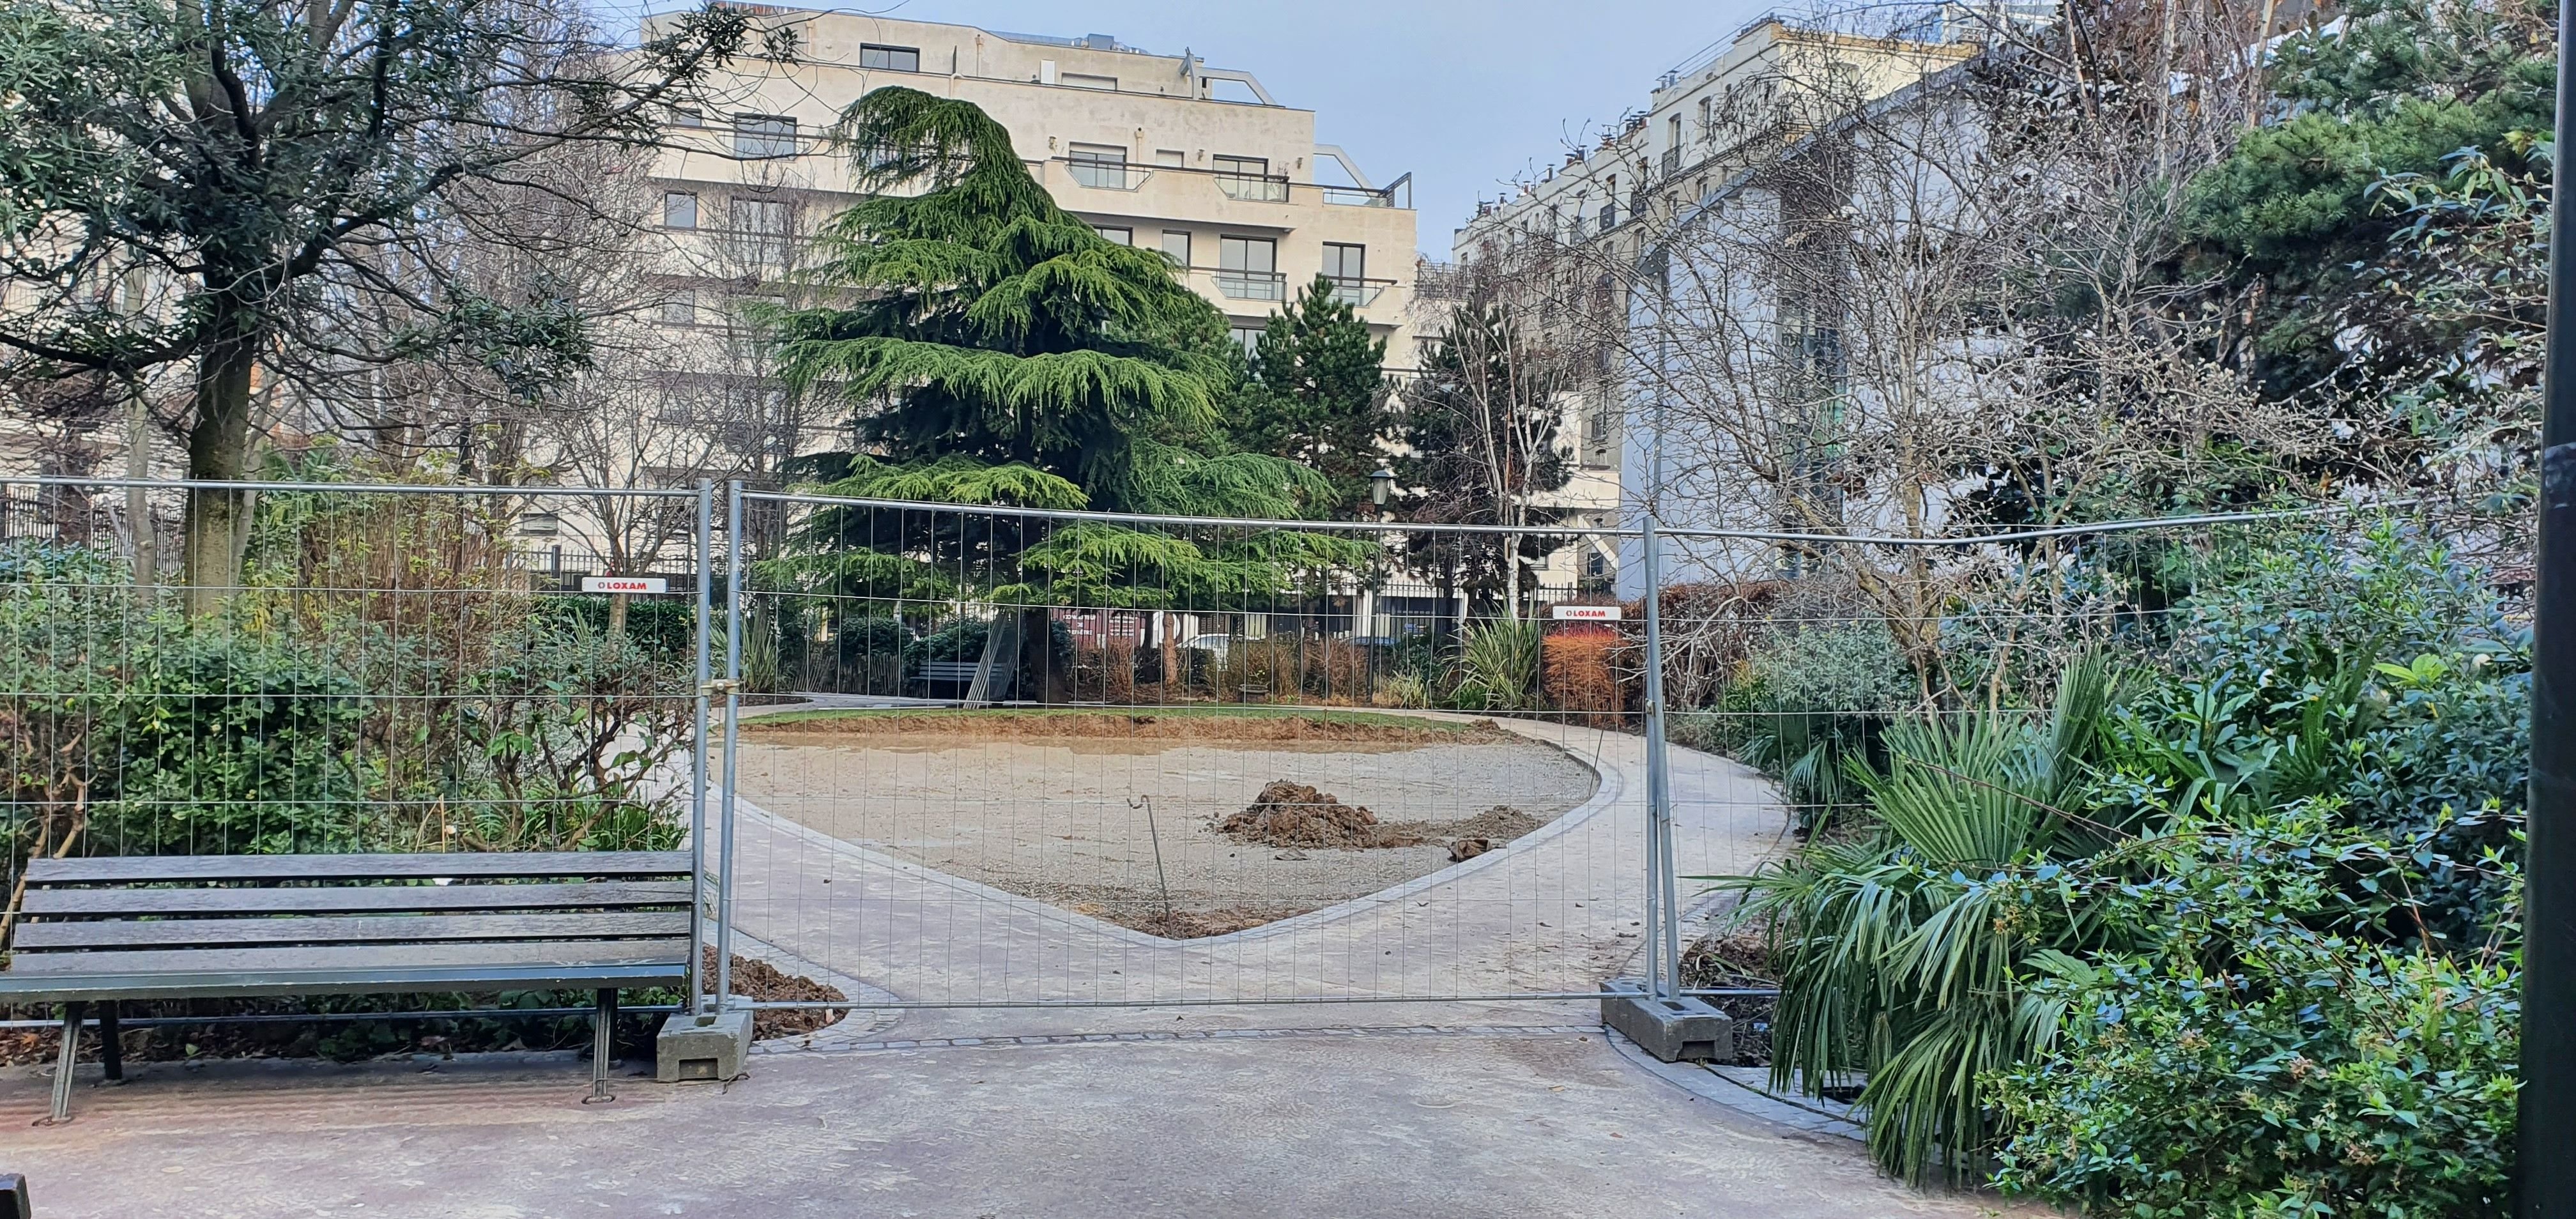 Levallois-Perret (Hauts-de-Seine), le 11 janvier 2022. Le projet de caniparc au sein du square Marjolin suscite une vive opposition de la part de certains riverains. LP/Anne-Sophie Damecour